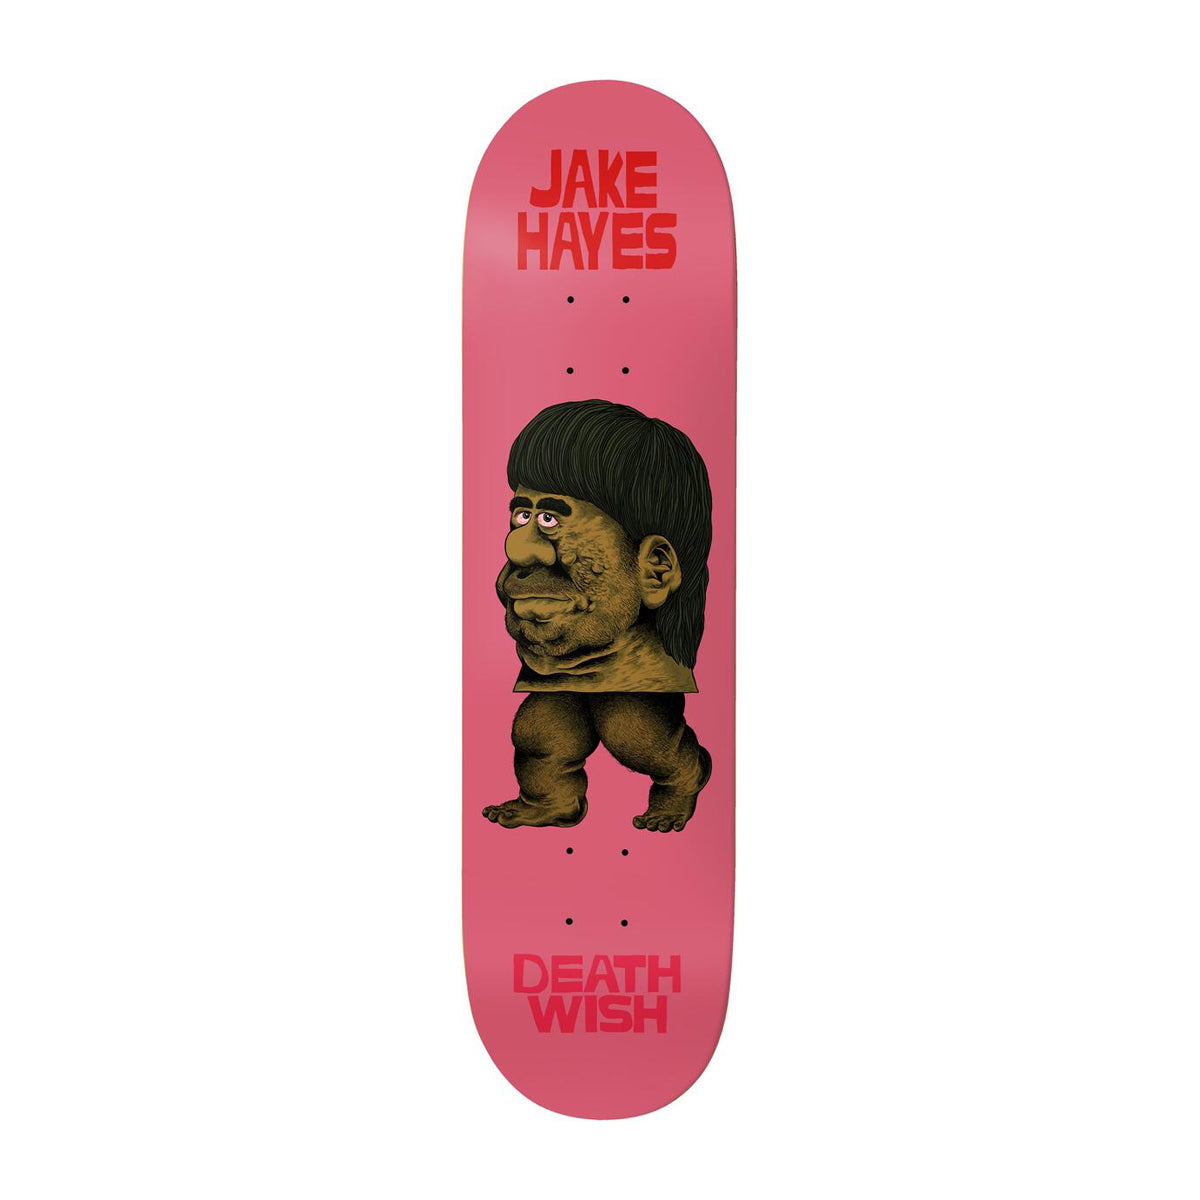 Deathwish Jake Hayes Froelich Skateboard Deck 8.475" - Apple Valley Emporium